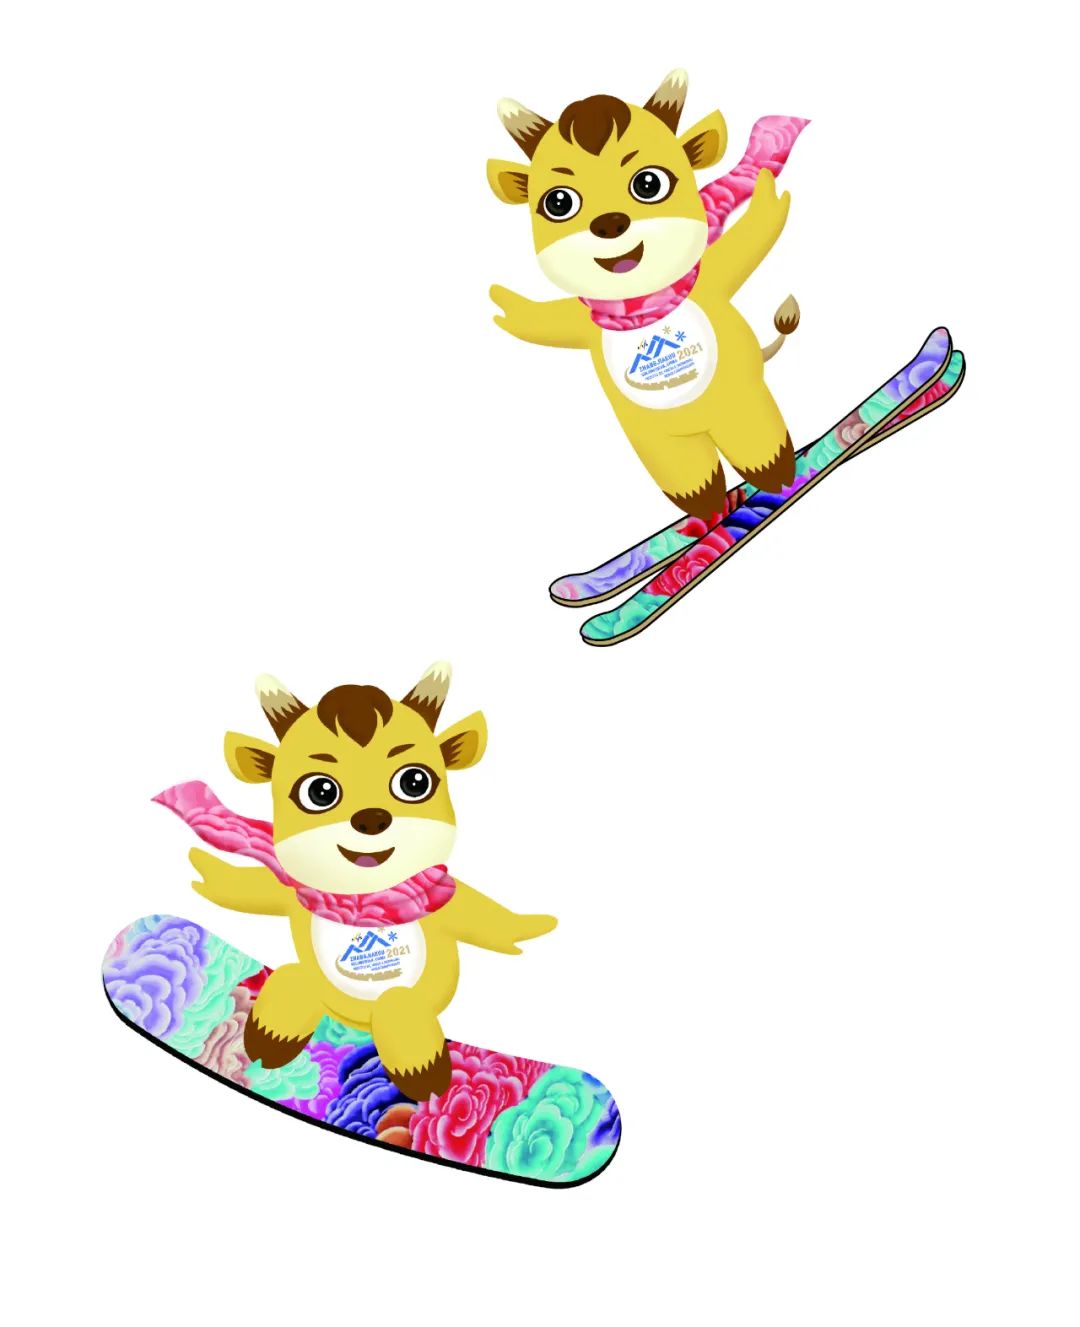 张家口2021年国际雪联自由式滑雪和单板滑雪世界锦标赛吉祥物揭晓